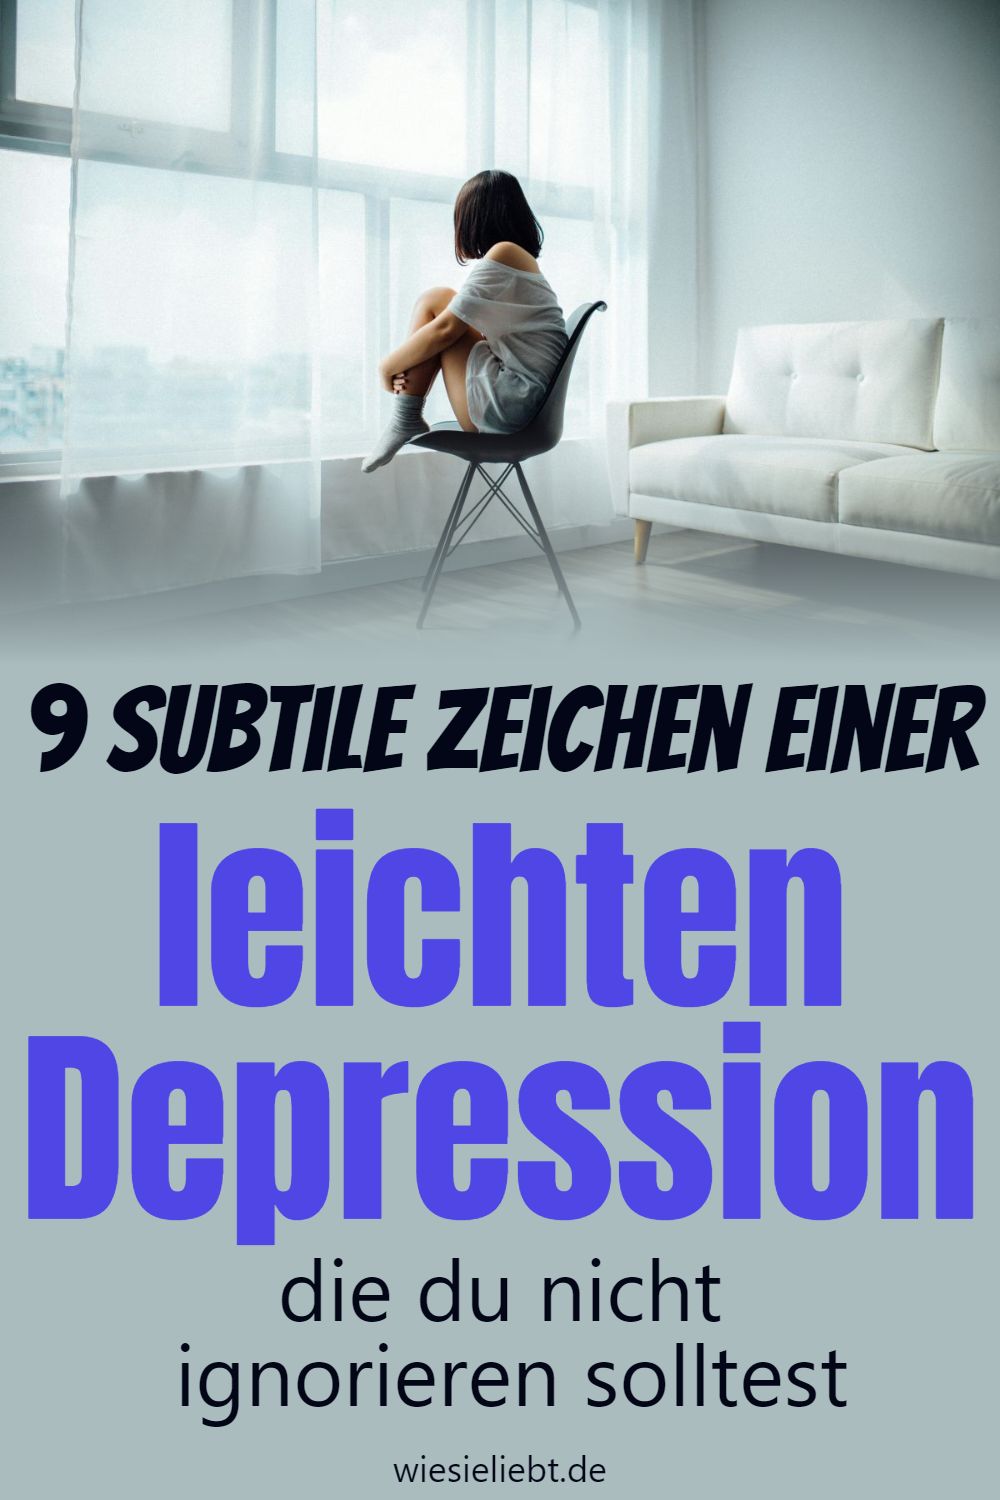 9 Subtile Zeichen einer leichten Depression die du nicht ignorieren solltest